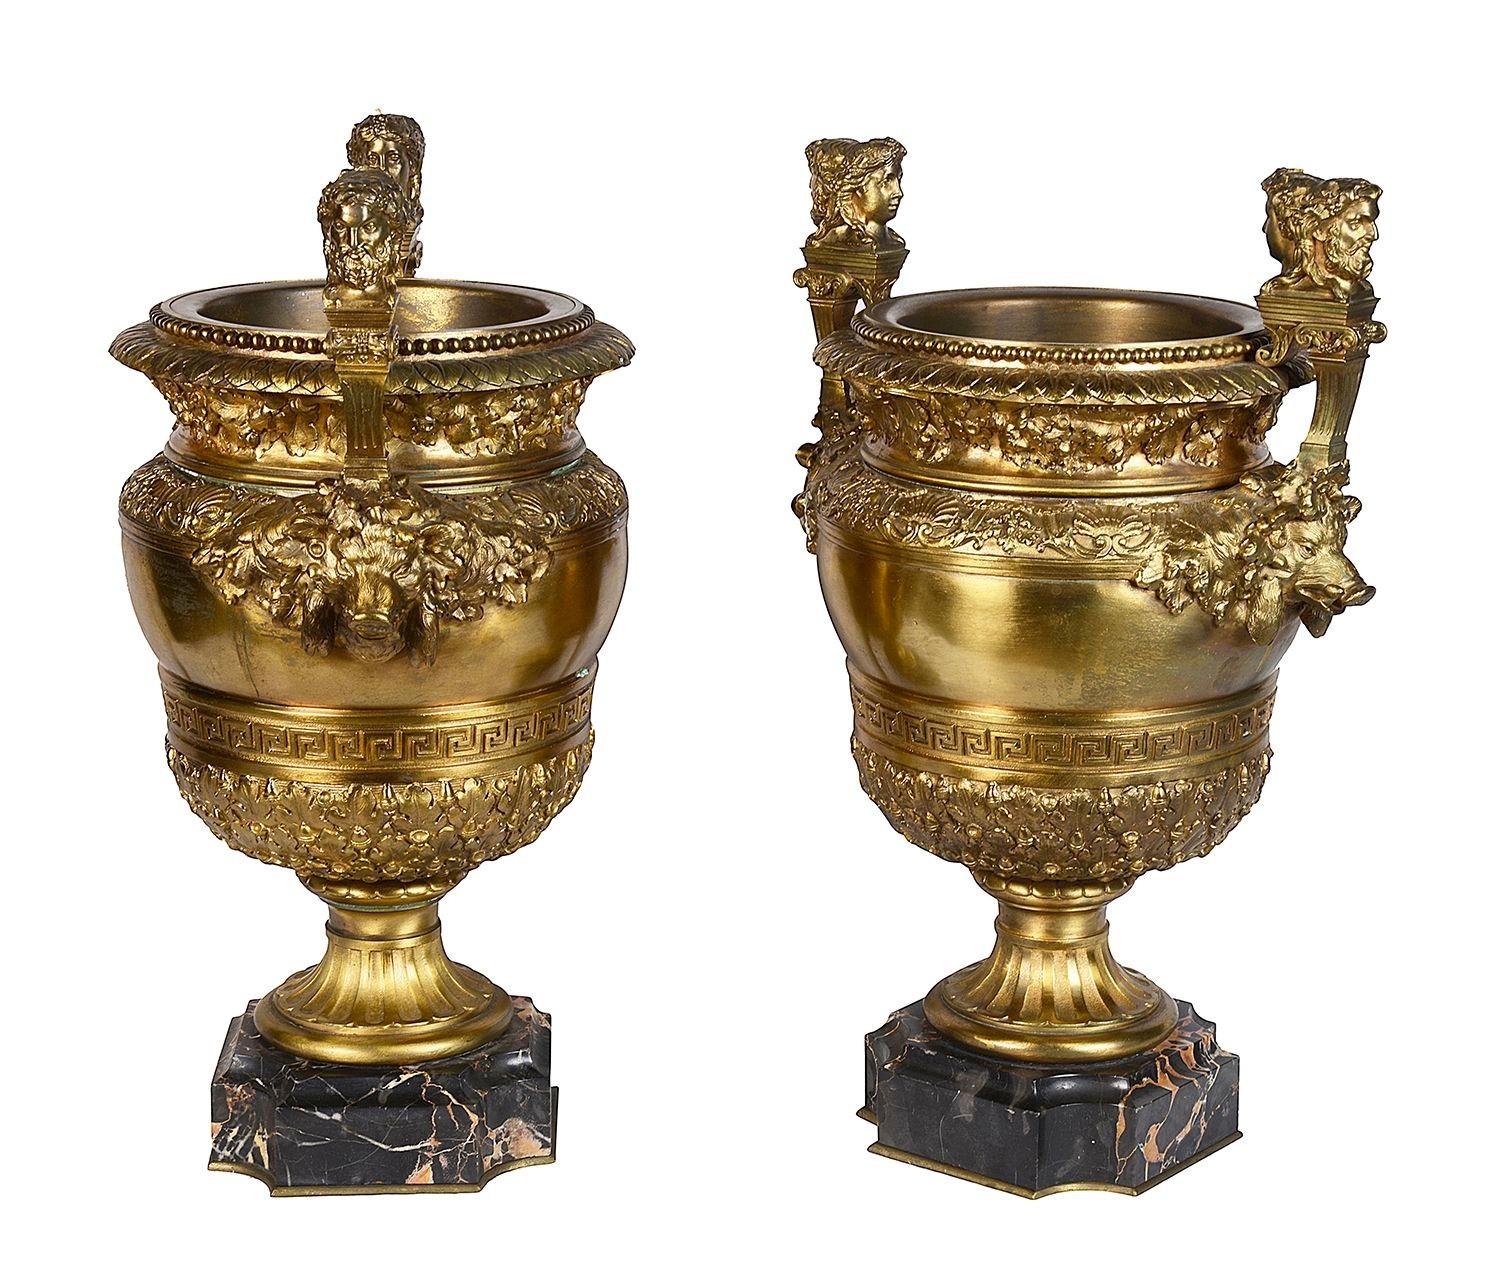 Une très impressionnante paire d'urnes classiques en bronze doré du XIXe siècle.
Chacun d'eux est orné d'un fleuron Janus à deux têtes, les côtés sont ornés de masques de sanglier et de bandes de coquillages, de feuilles de chêne et d'un motif de